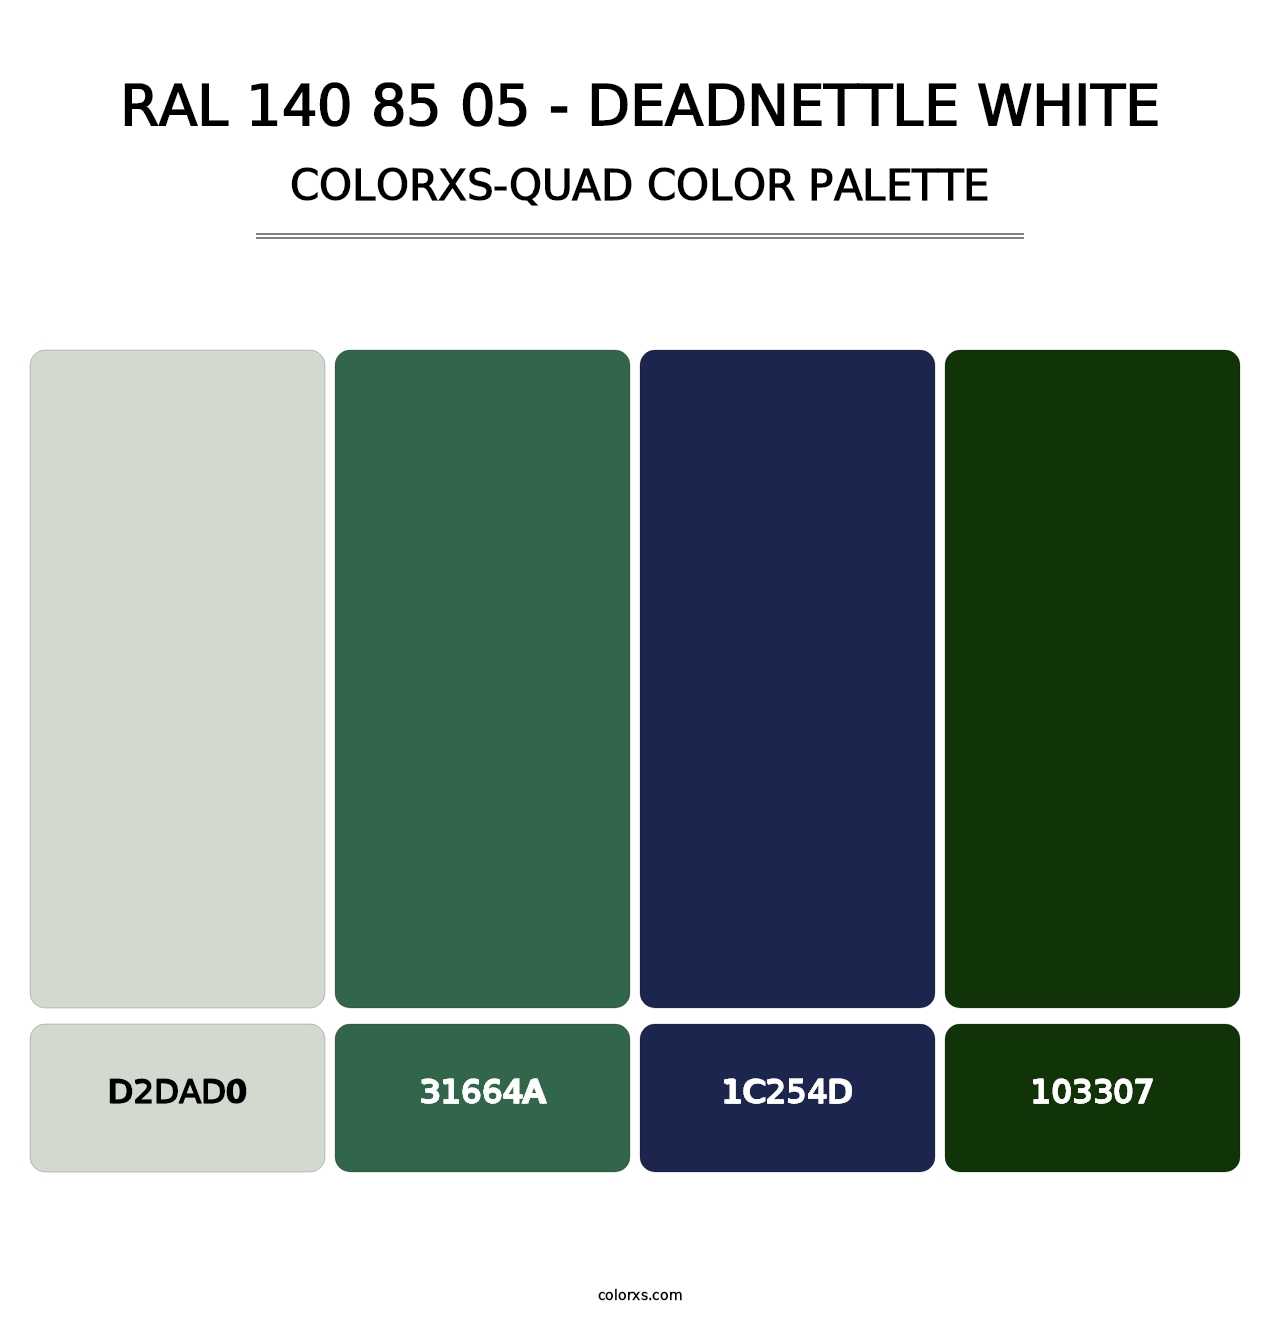 RAL 140 85 05 - Deadnettle White - Colorxs Quad Palette